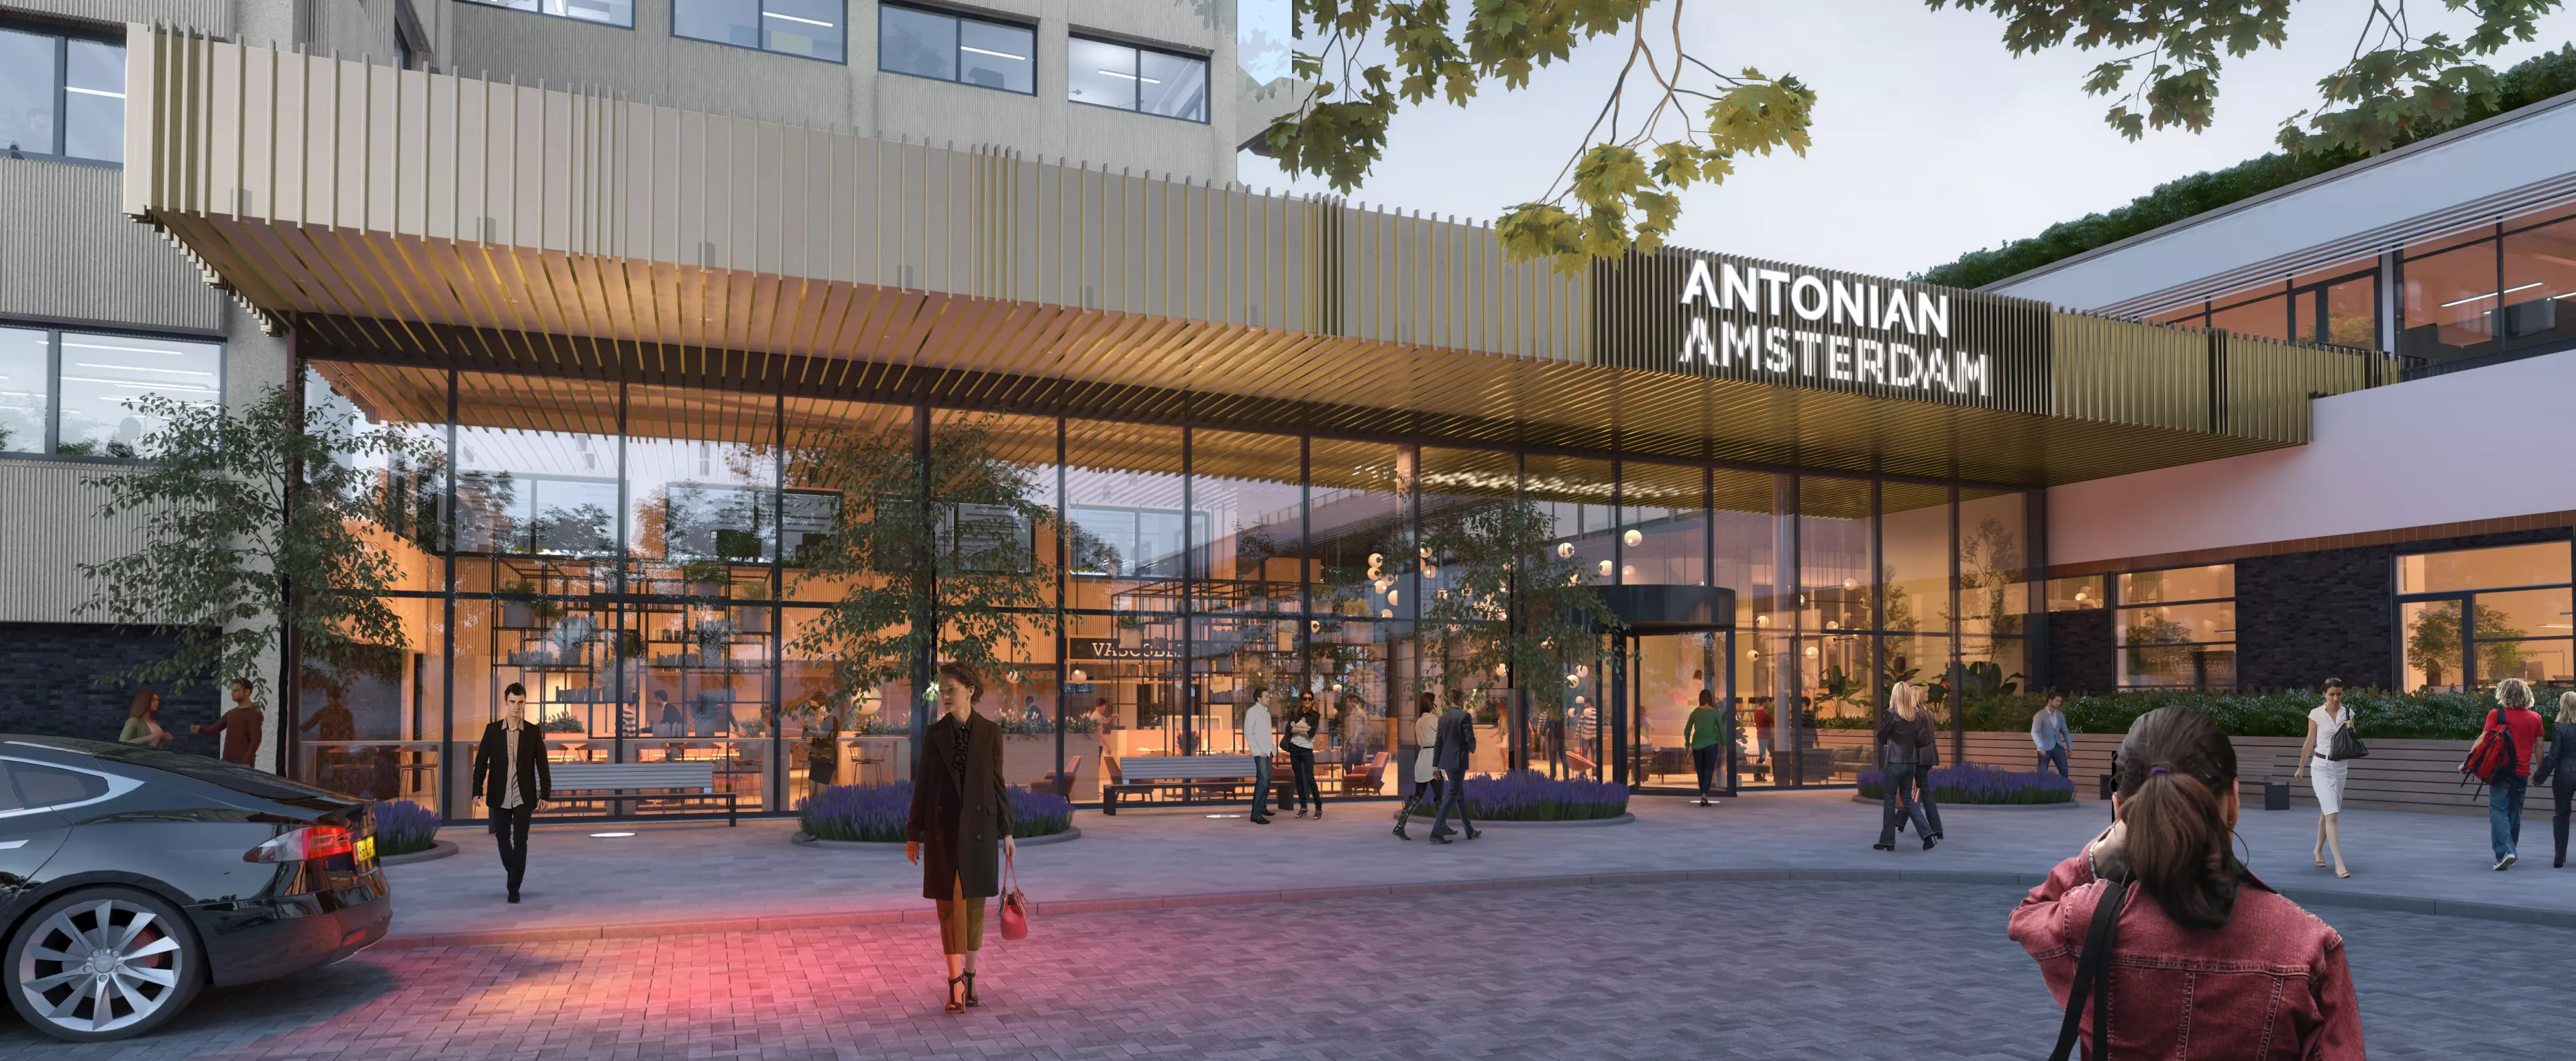 Antonian Amsterdam Ooijevaar MOKA architecten